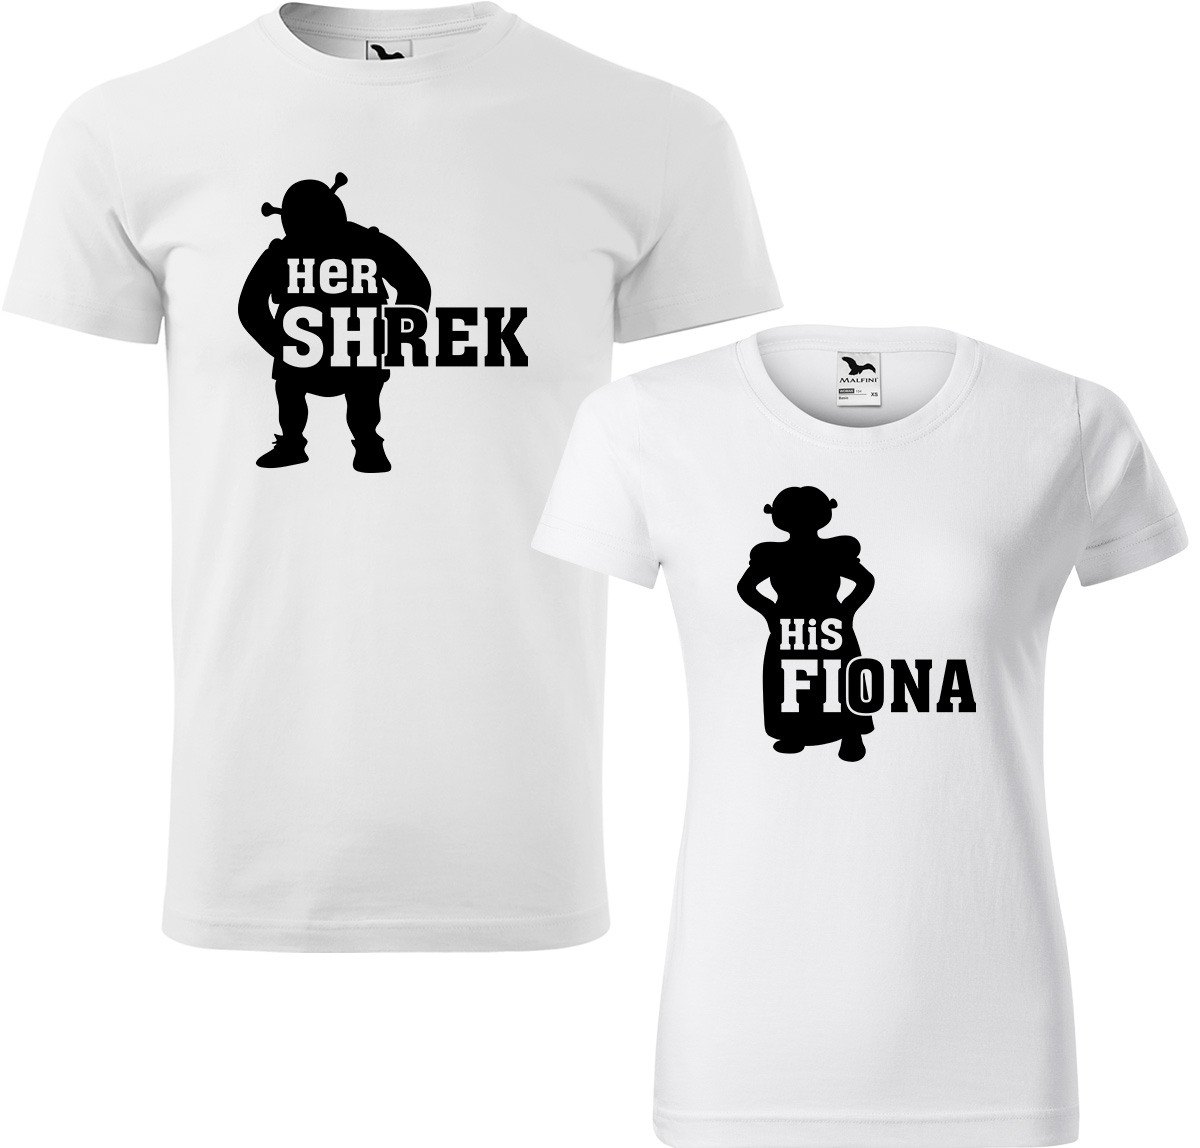 Trička pro páry - Shrek a Fiona Barva: Bílá (00), Velikost dámské tričko: 3XL, Velikost pánské tričko: 3XL